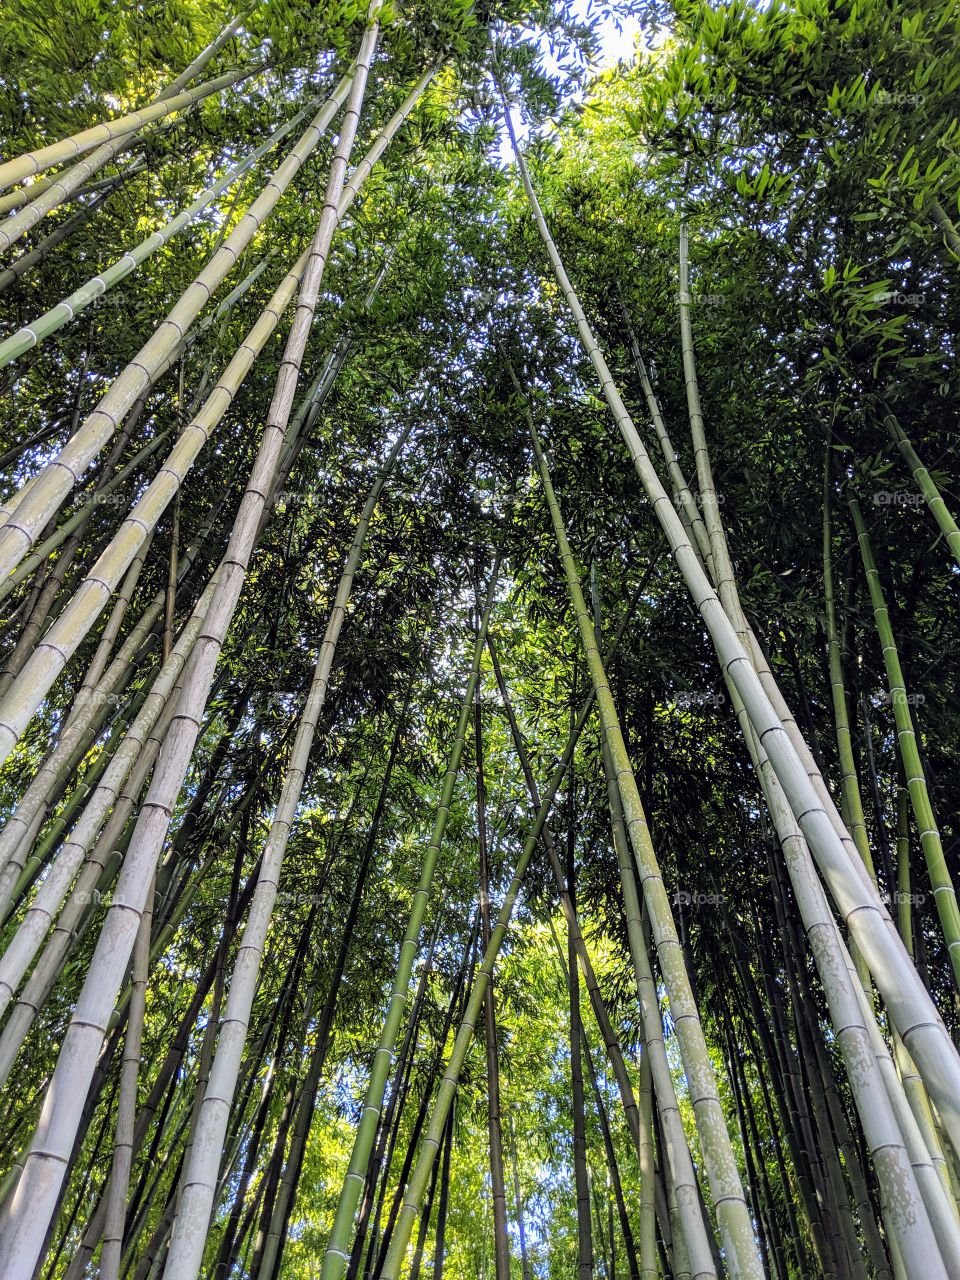 Looking upwards at bamboo trees